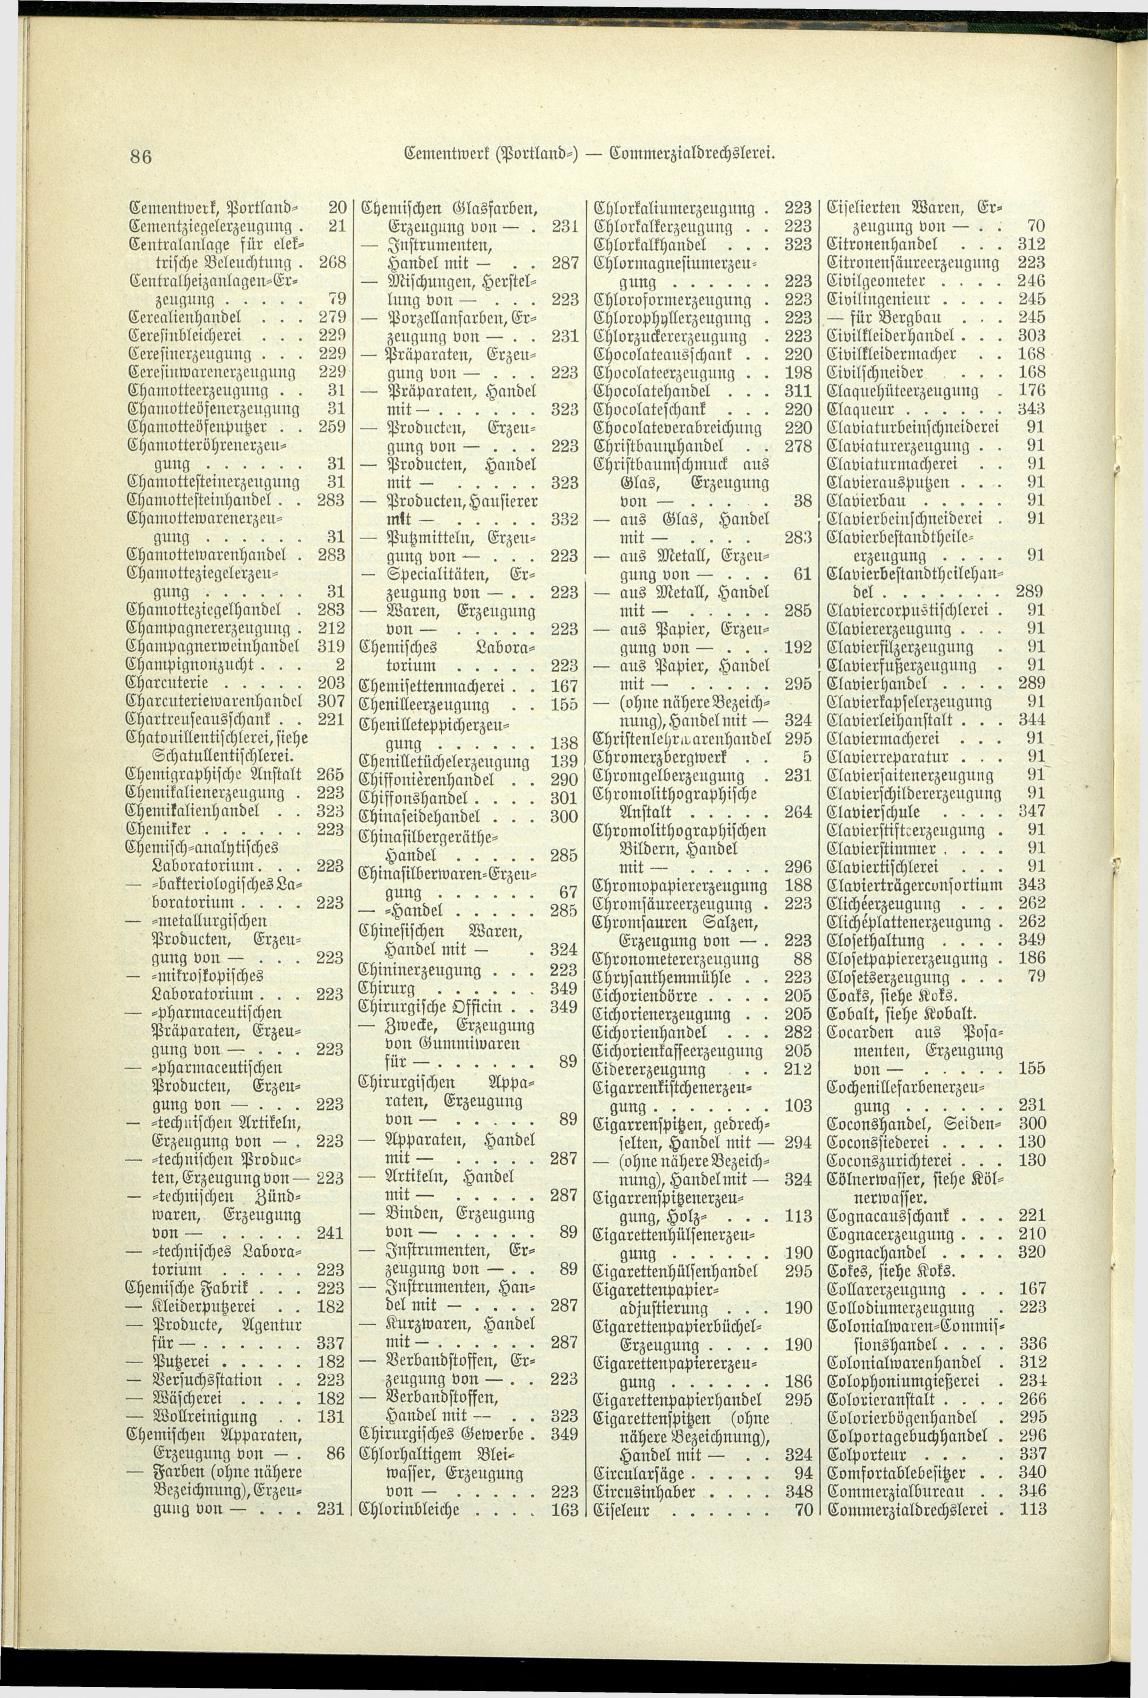 Verzeichnis der Gewerbe der im Reichsrathe vertretenen Königreiche und Länder 1900 - Page 90